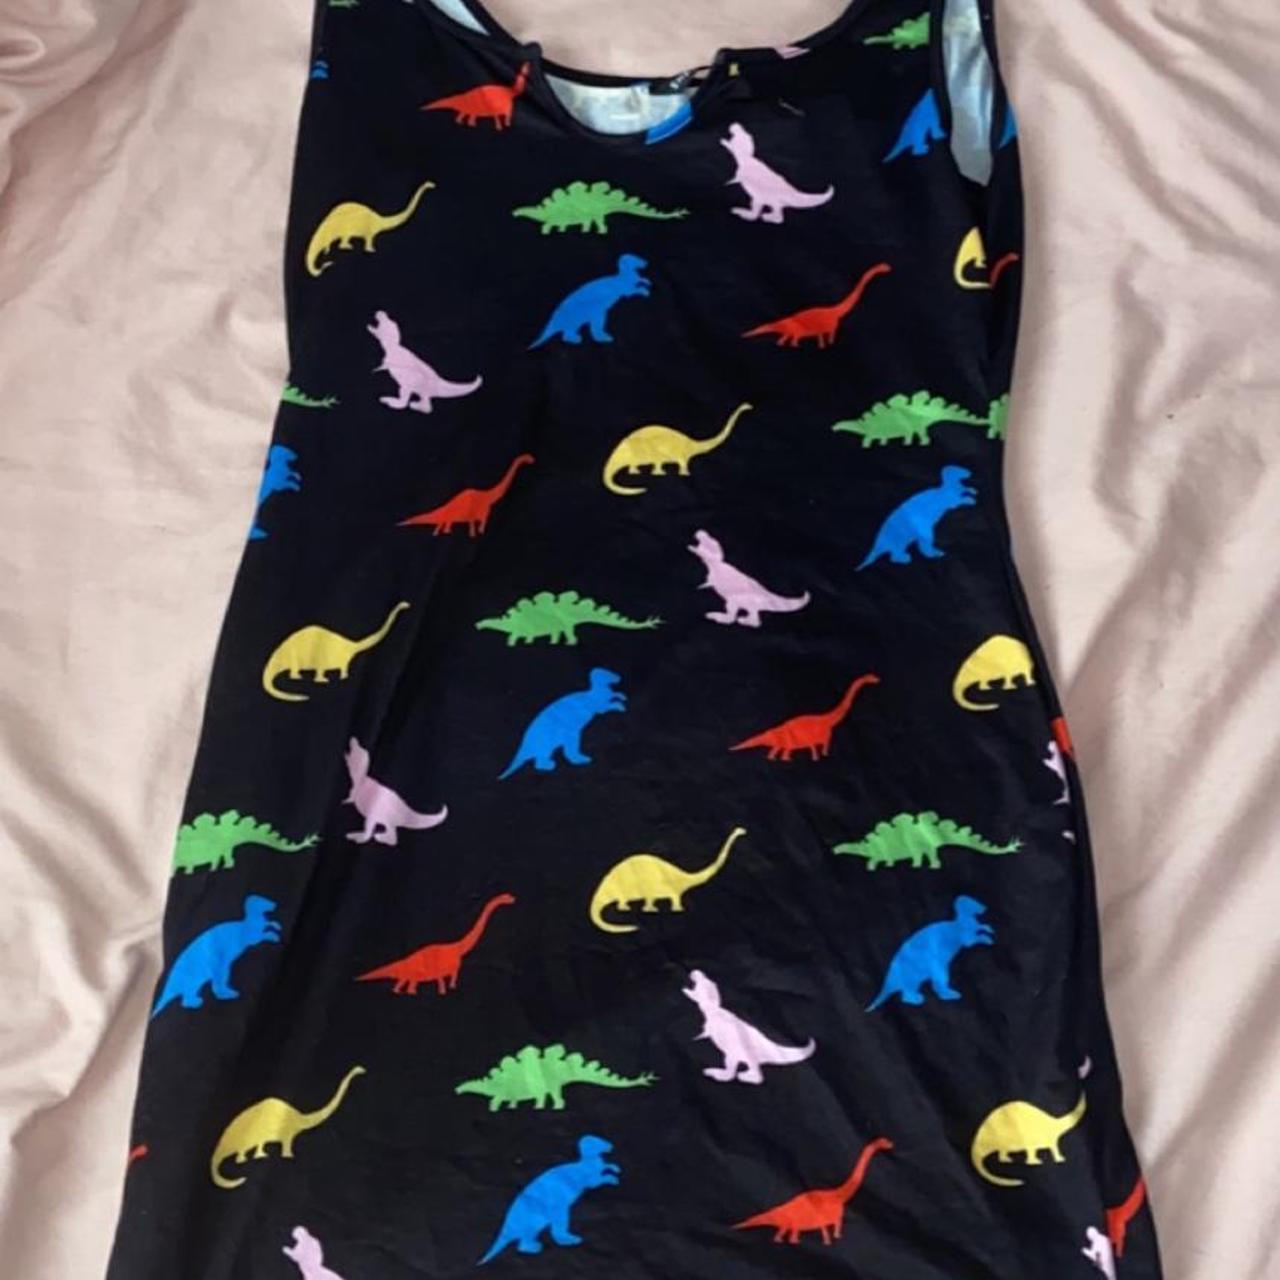 shein dinosaur dress size medium/8-10 never been worn - Depop